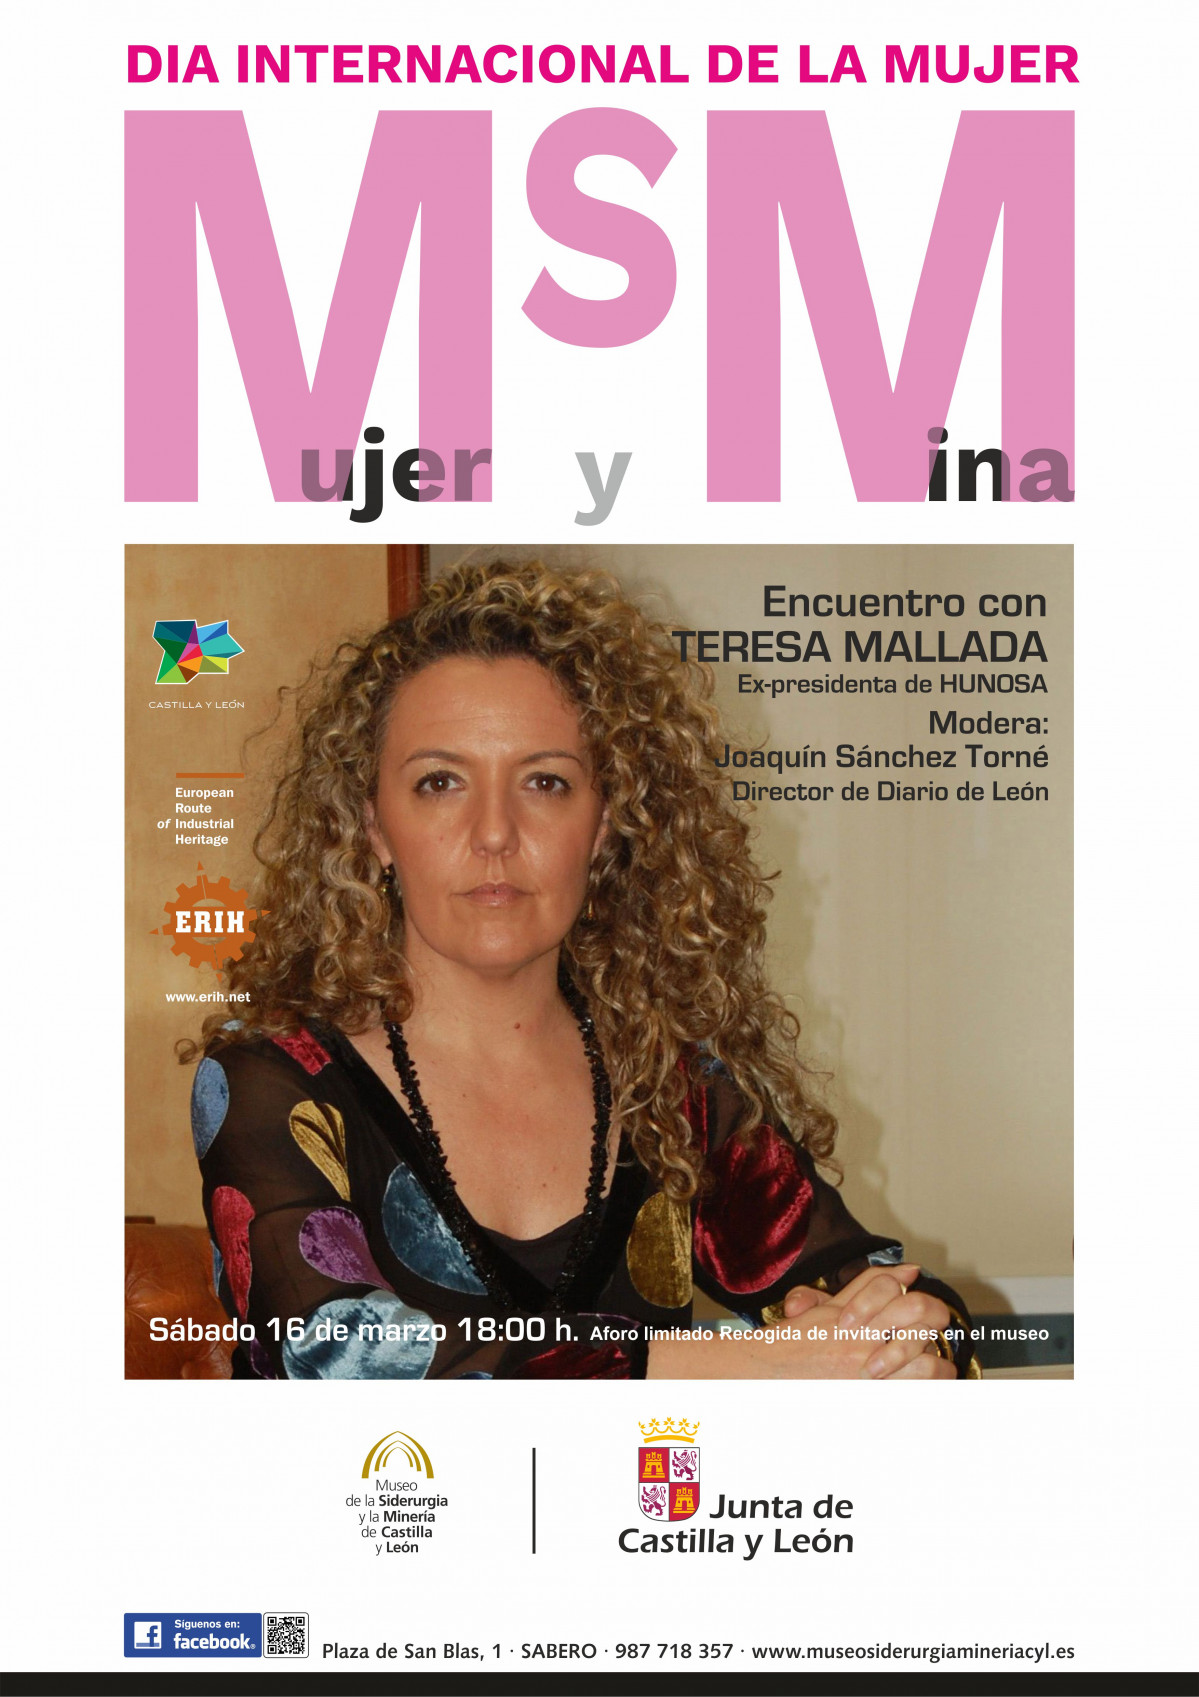 Encuentro con Teresa Mallada (1)